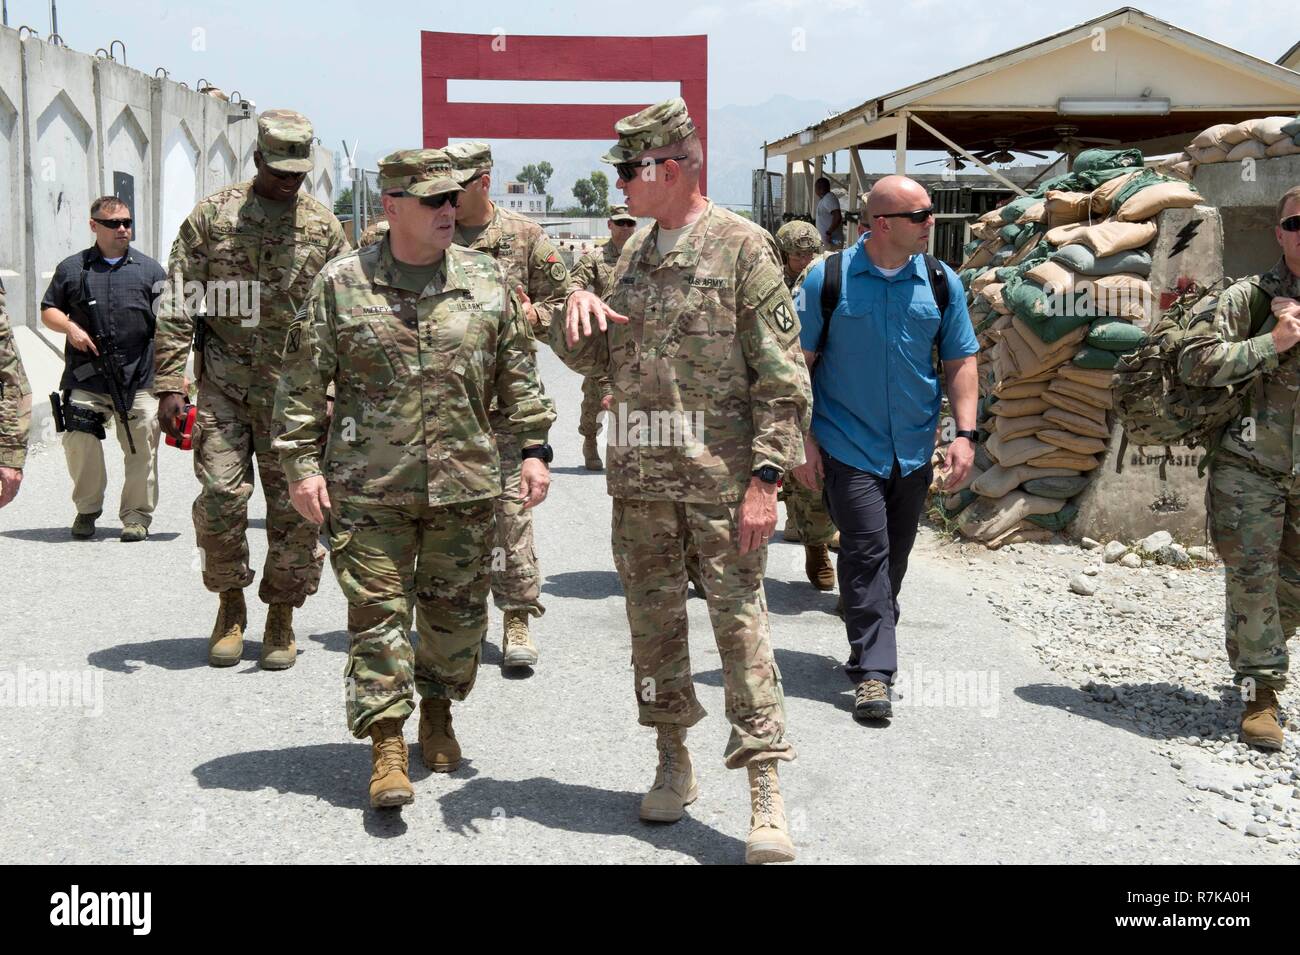 Us-Generalstabschef Gen. Mark Milley, links, bei einem Besuch in Forward Operating Base Fenty Juli 18, 2016 in Jalalabad, Afghanistan. Milley wurde von Präsident Donald Trump am 8. Dezember entschieden, 2018 die nächste Vorsitzende des Generalstabs zu sein. Stockfoto